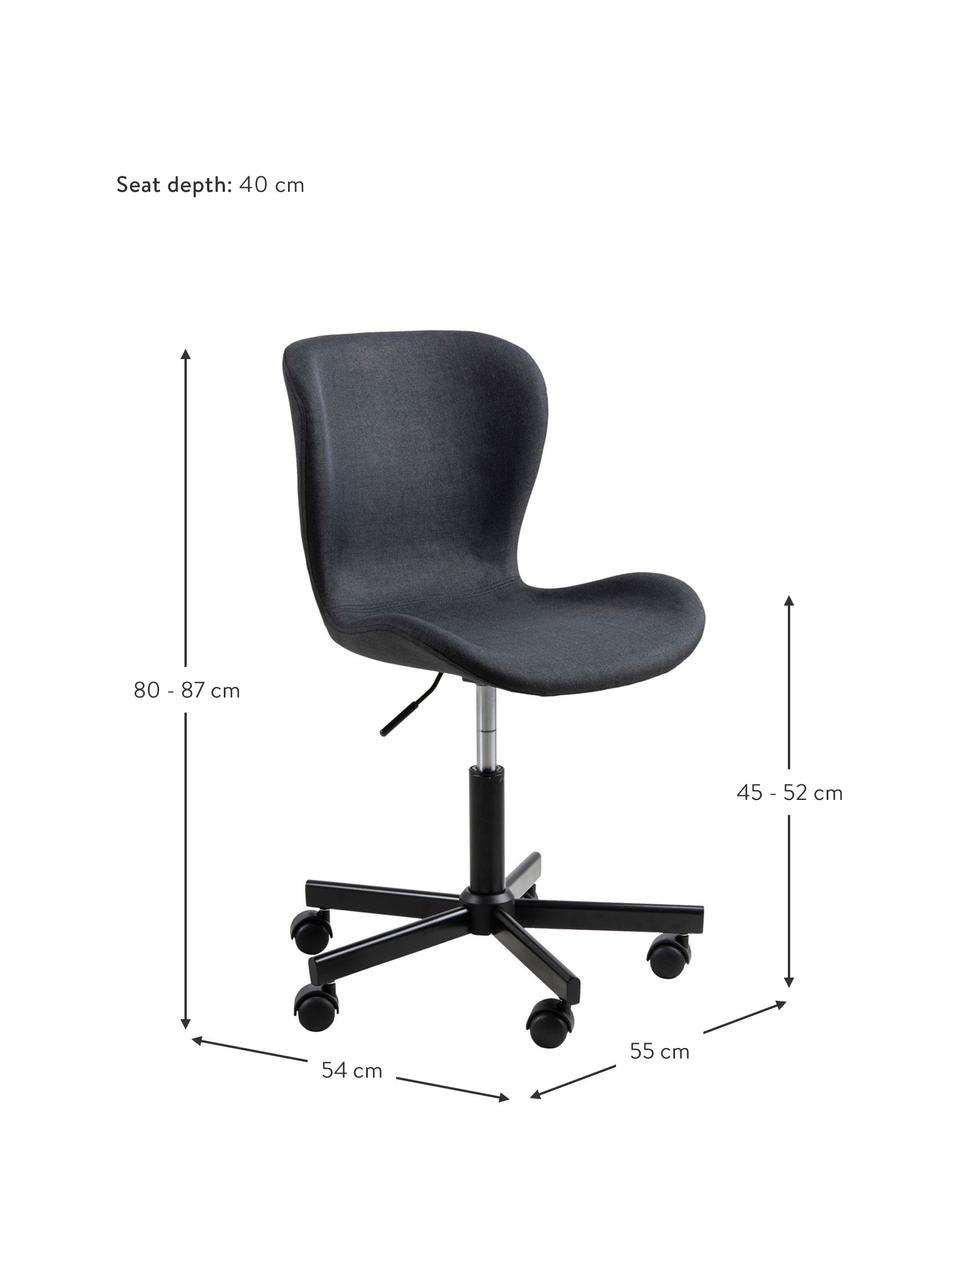 Výškově nastavitelná kancelářská otočná židle Batilda, Antracitová, Š 55 cm, H 54 cm